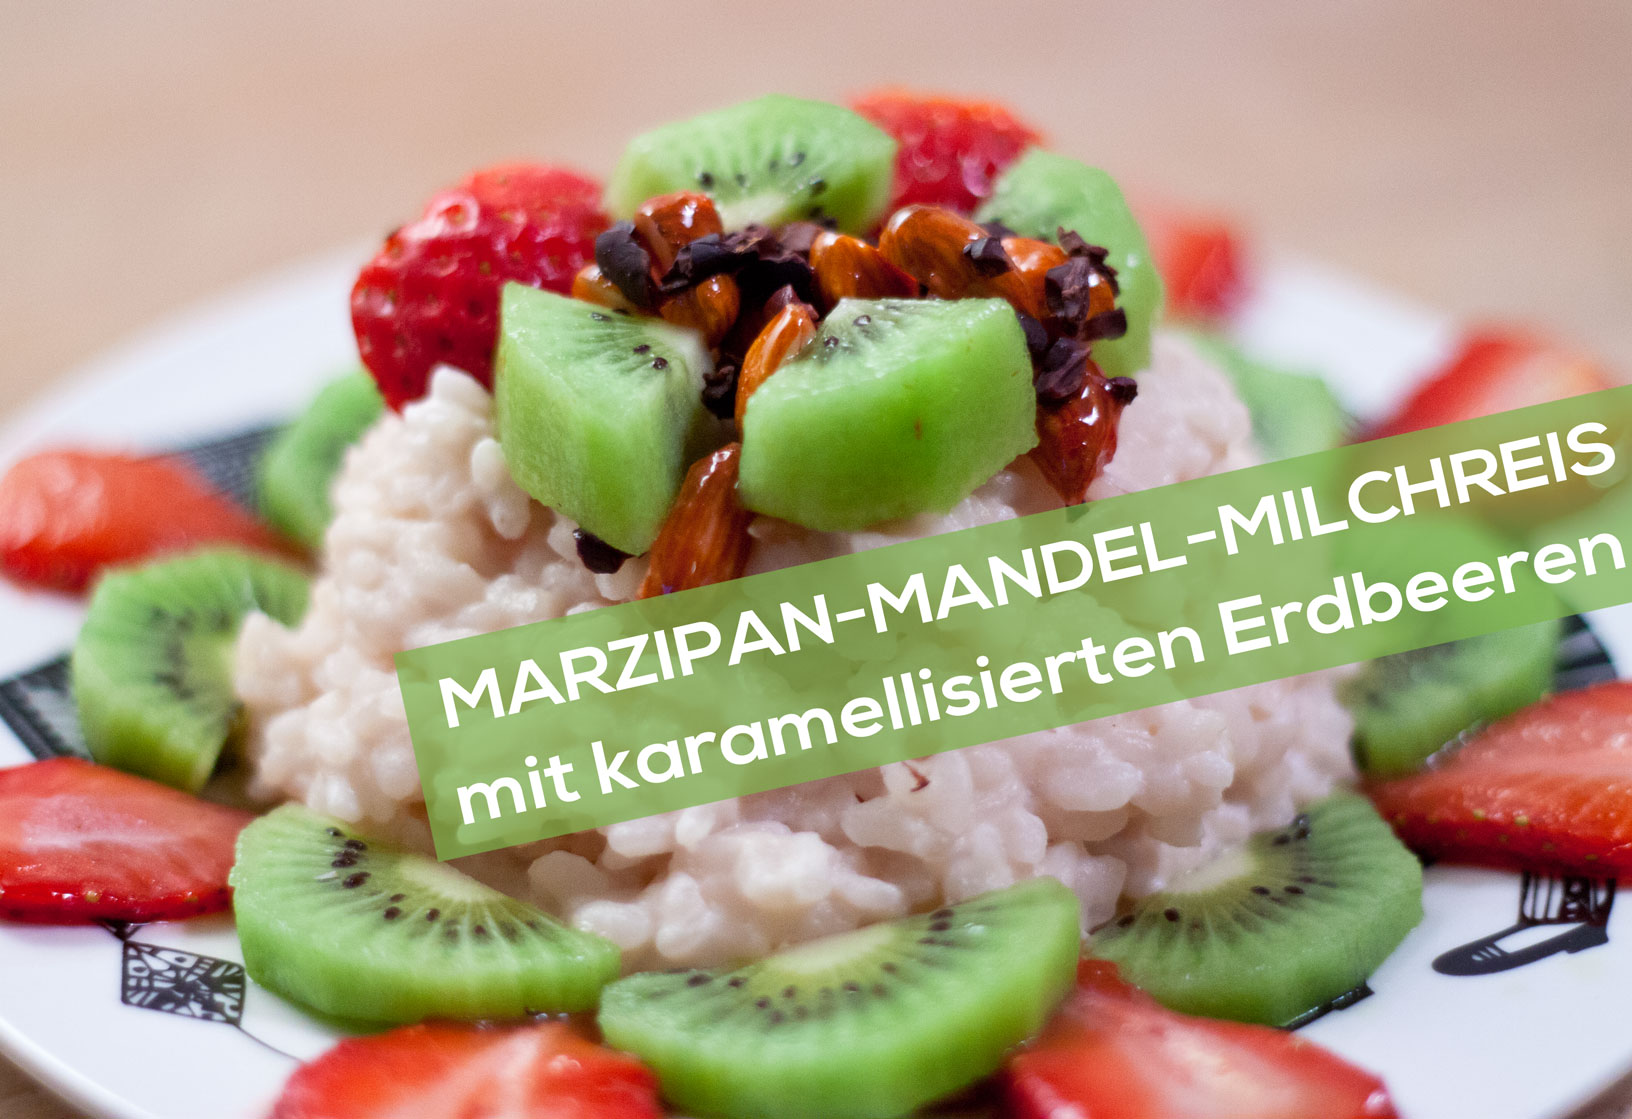 Marzipan-Mandel-Milchreis